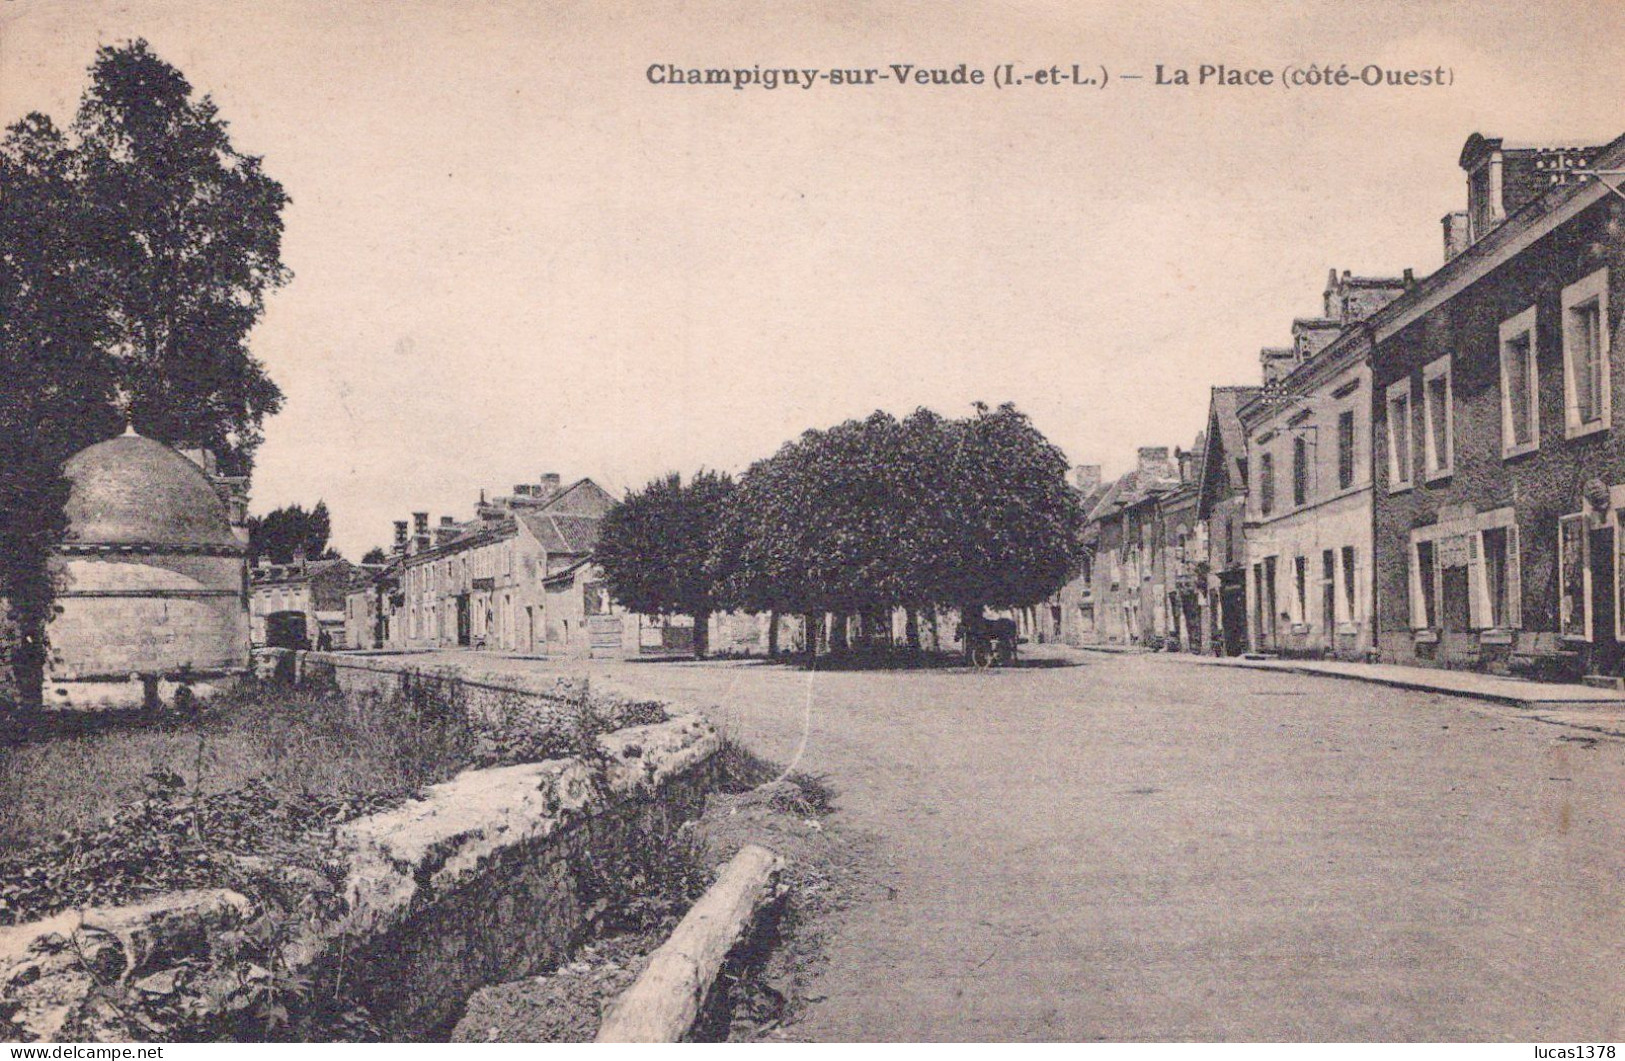 37 / CHAMPIGNY SUR VEUDE / LA PLACE / COTE OUEST - Champigny-sur-Veude